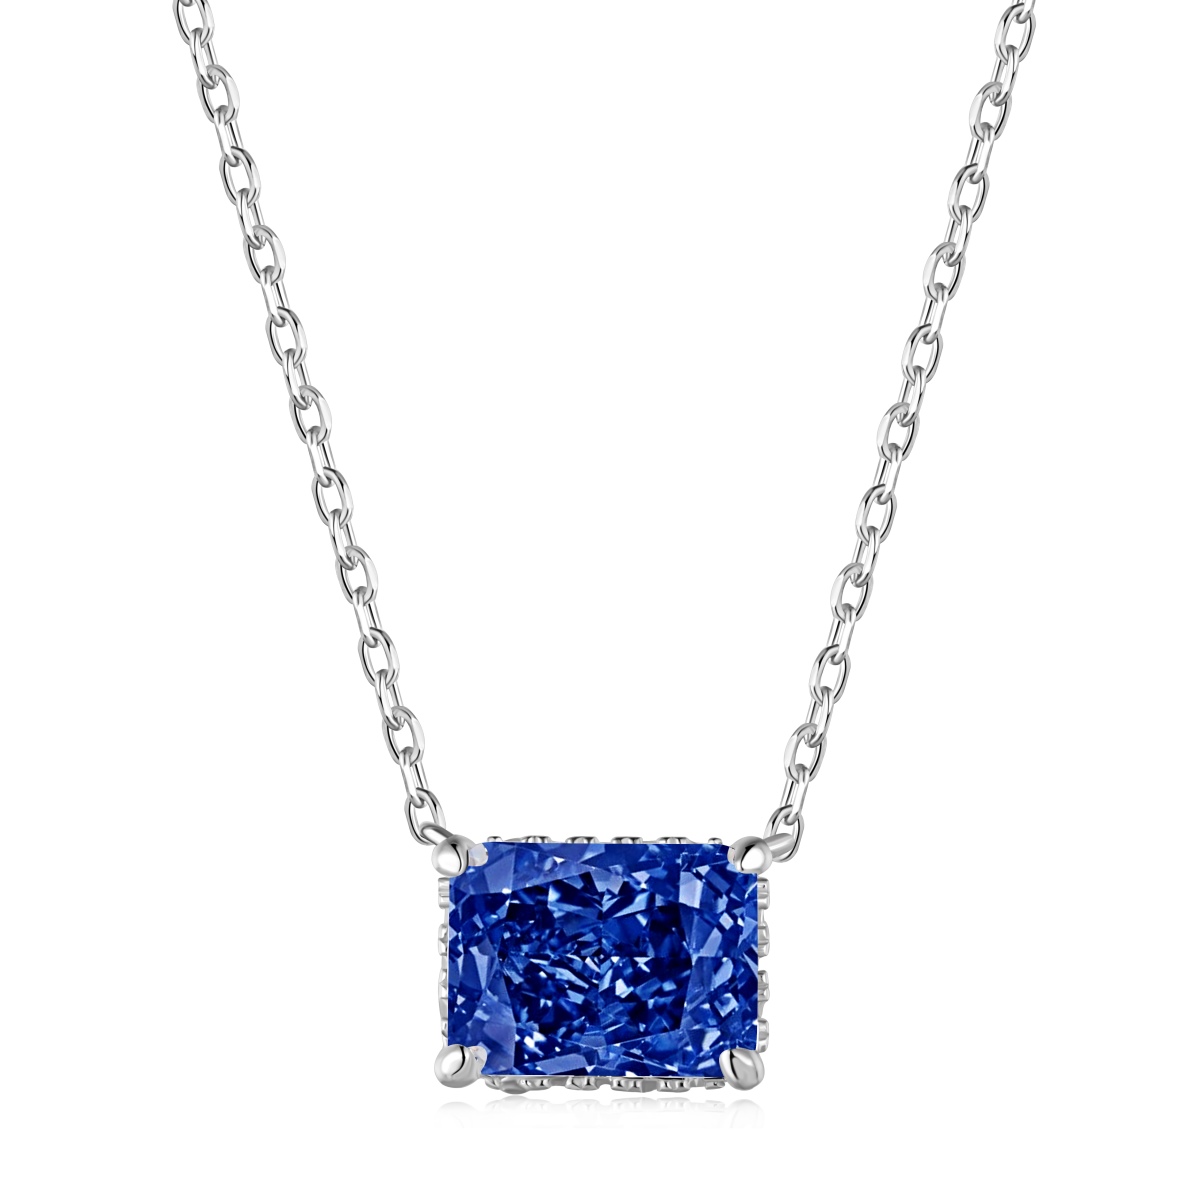 Celeste London Blue Pendant Necklace Sterling Silver - Silverly